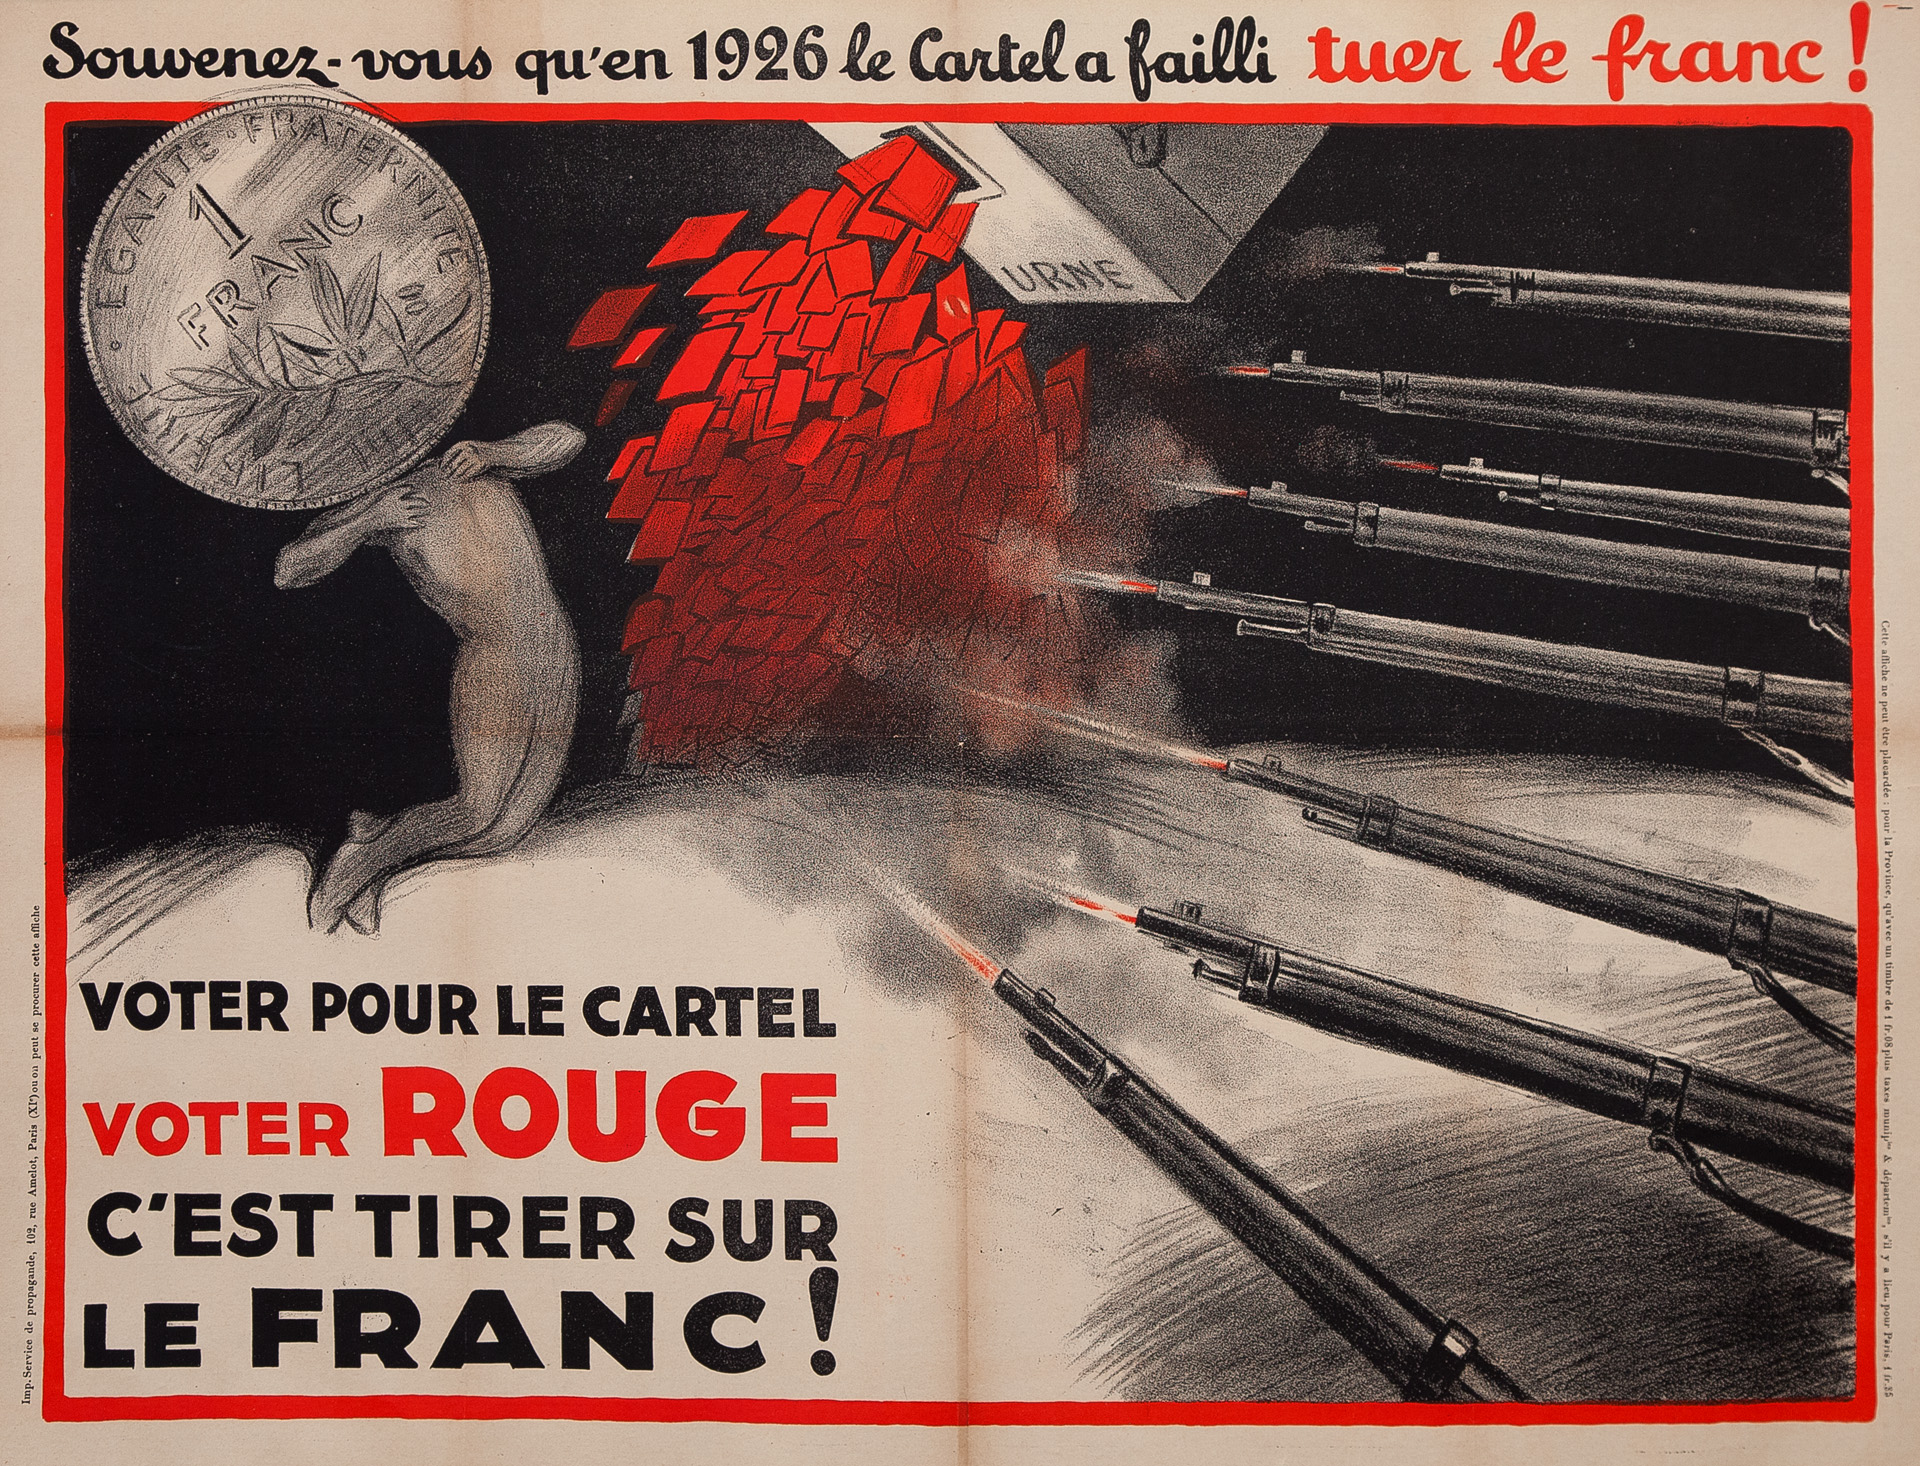 Souvenez-vous qu'en 1926 le Cartel a failli tuer le franc!